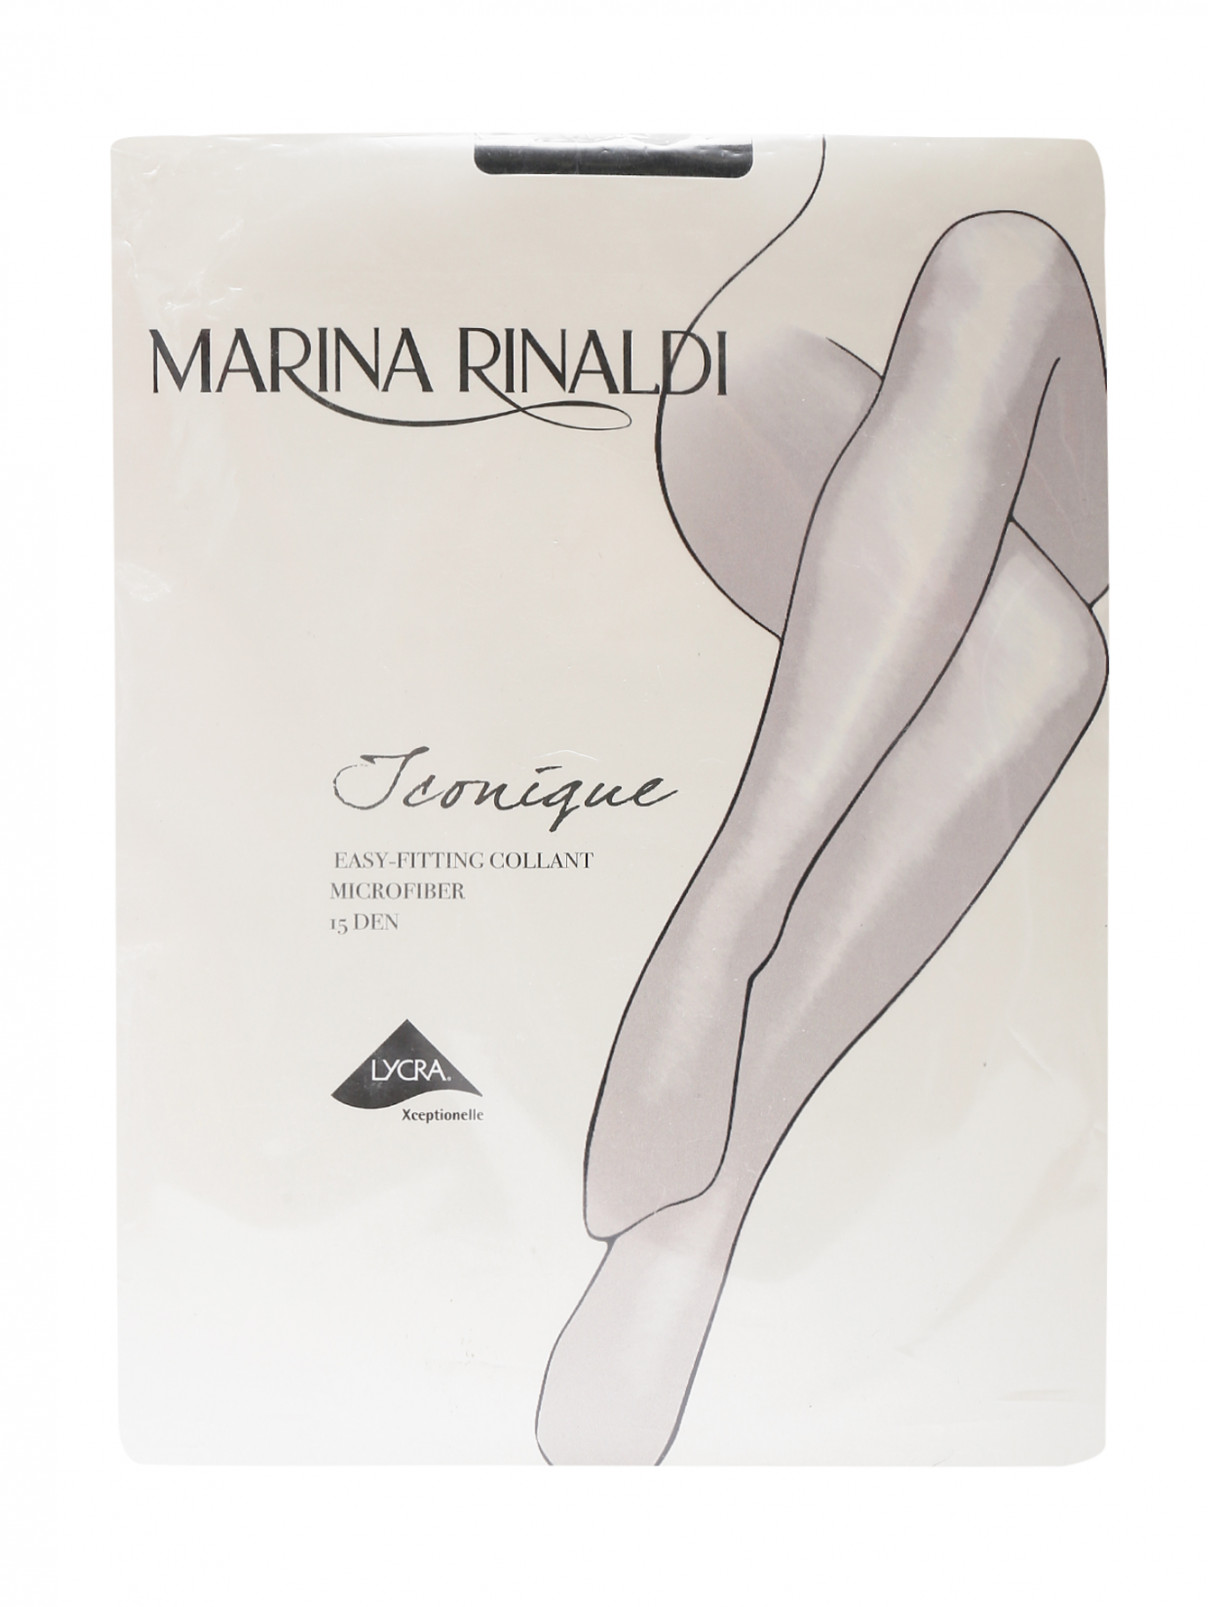 Колготки 15 DEN Marina Rinaldi  –  Общий вид  – Цвет:  Черный